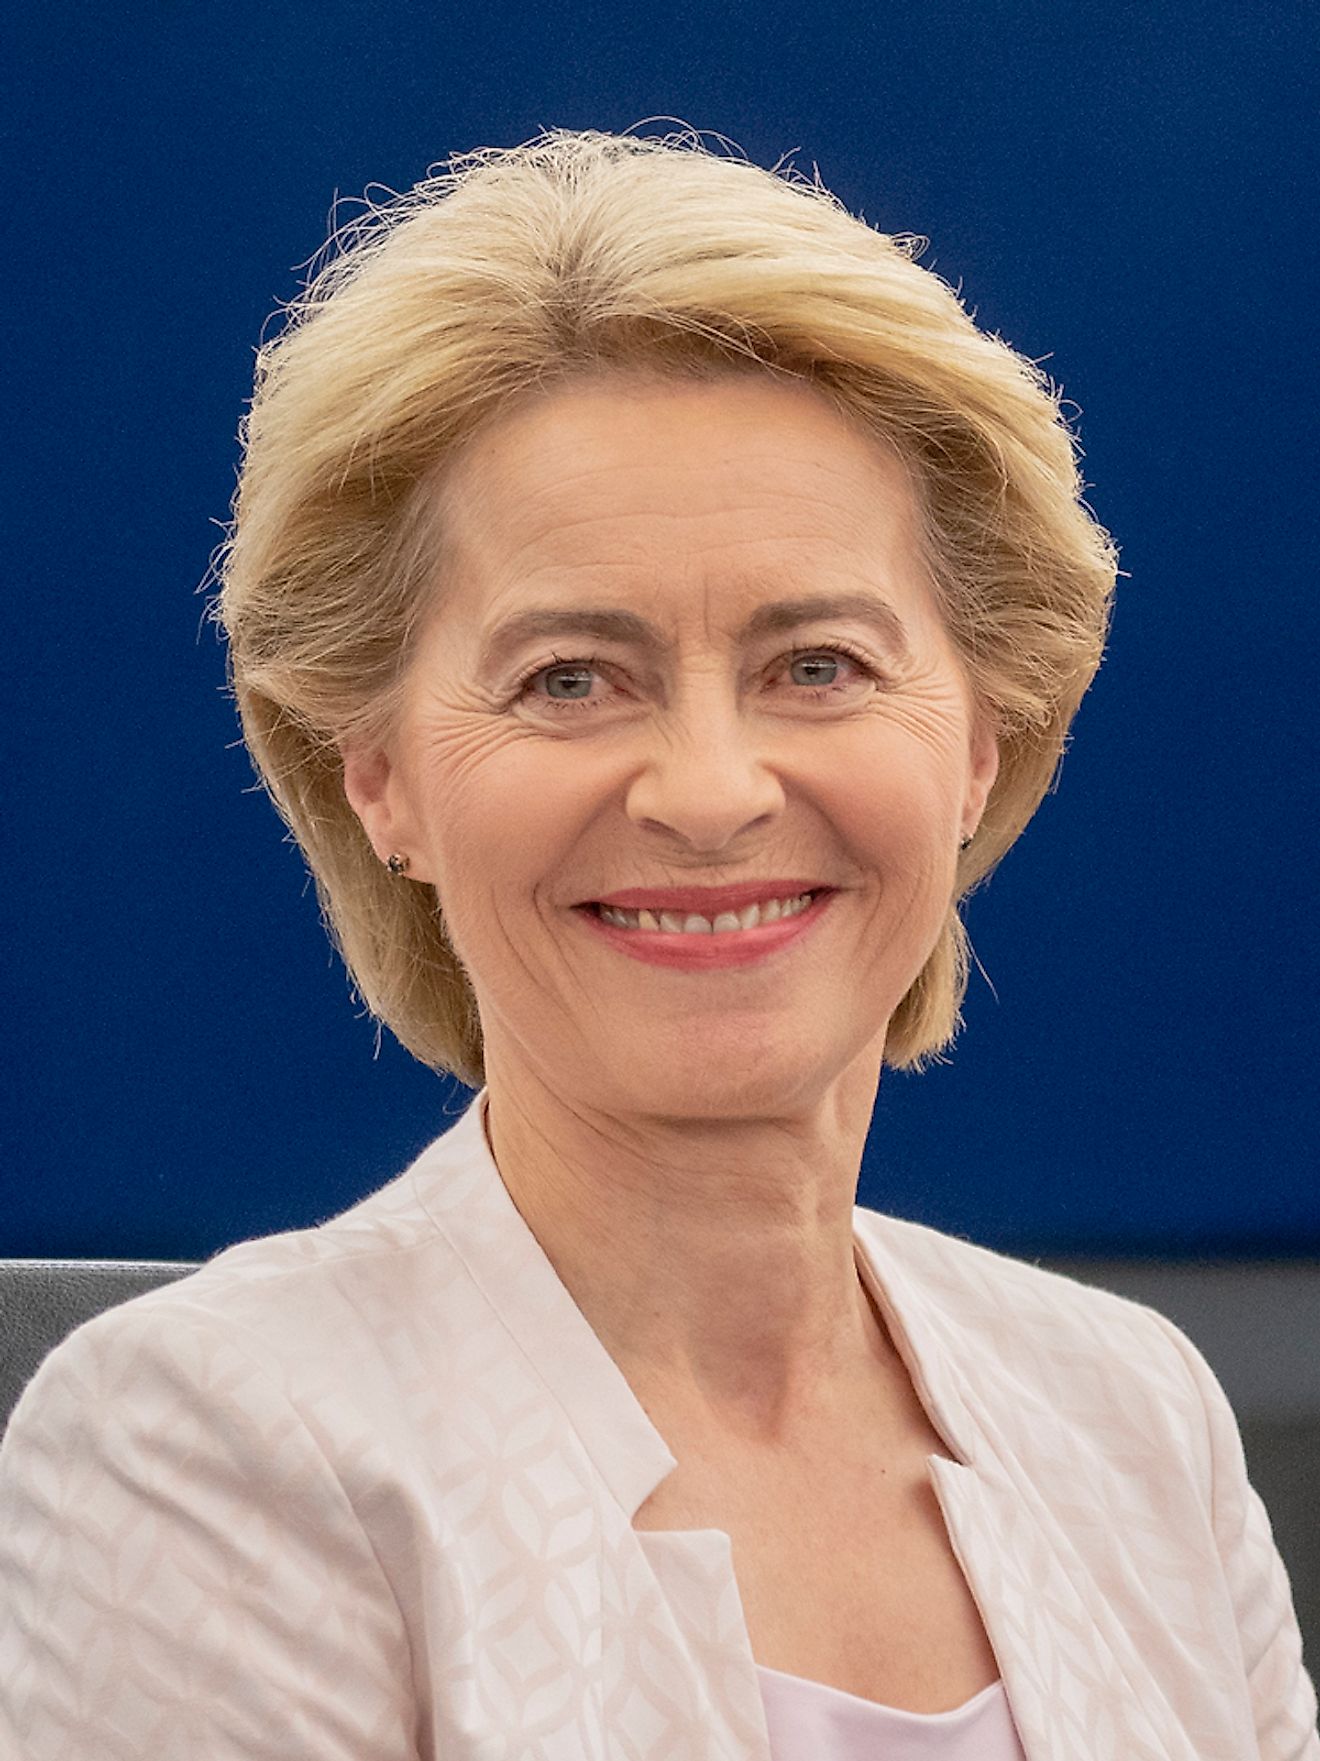 Ursula von der Leyen. Image credit: European Union 2019 – Source: EP/Wikimedia.org